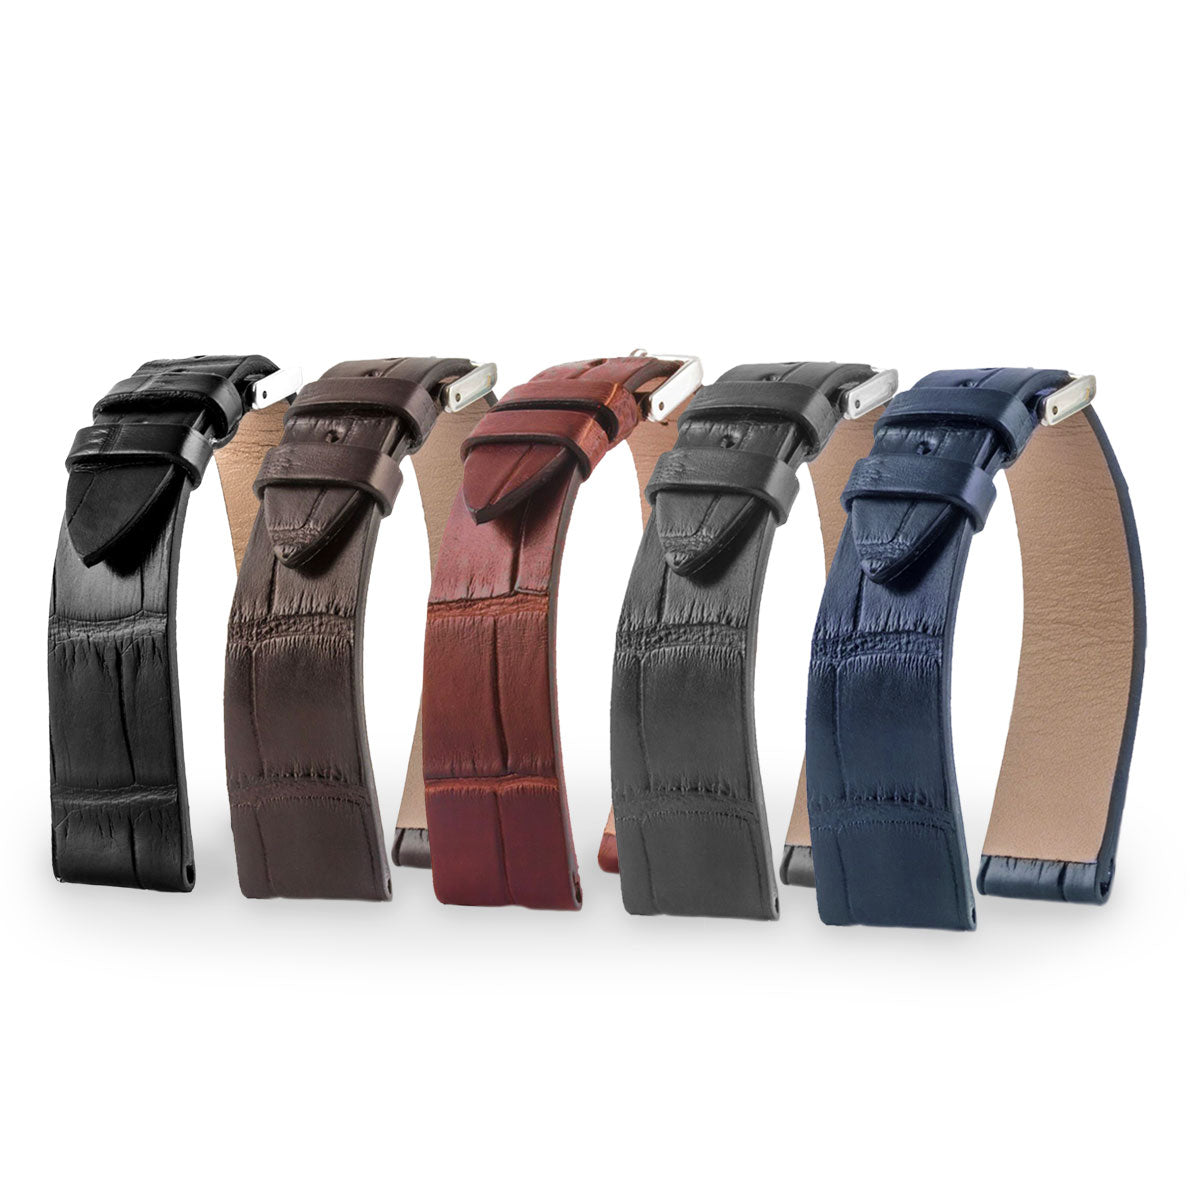 Jaeger Lecoultre Reverso - Bracelet montre cuir - Alligator (noir, marron, gris, bleu) - watch band leather strap - ABP Concept -